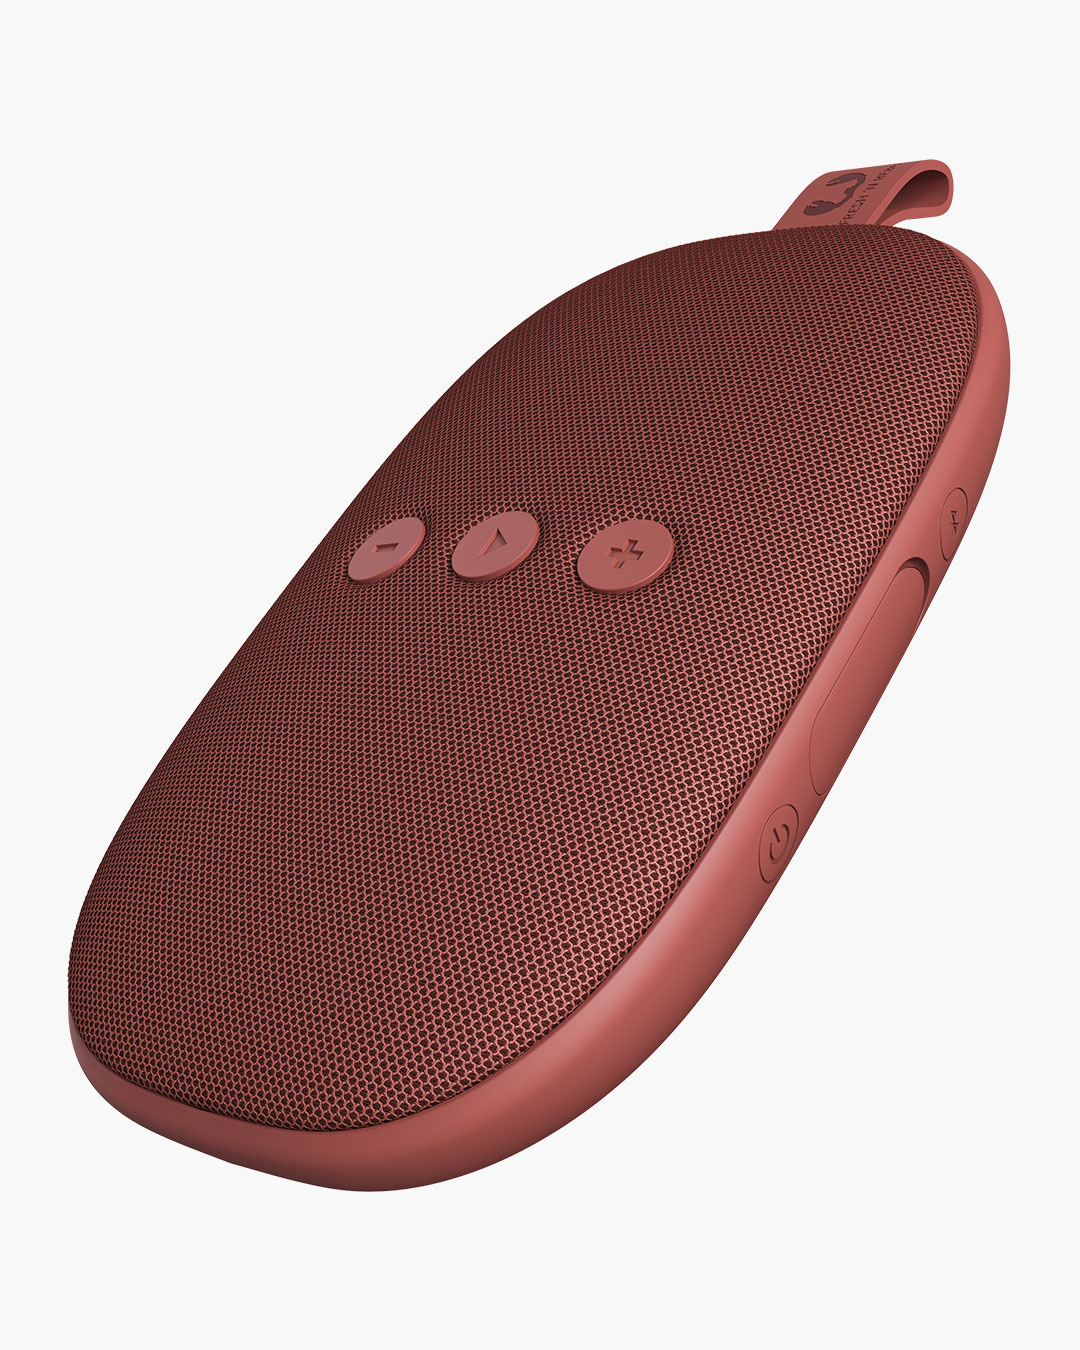 grigio chiaro Fresh ‘n Rebel Speaker Bluetooth Rockbox Pebble Cloud Altoparlante portatile wireless antiurto e splash / resistente agli schizzi / bassi profondi con 5 ore di autonomia vivavoce